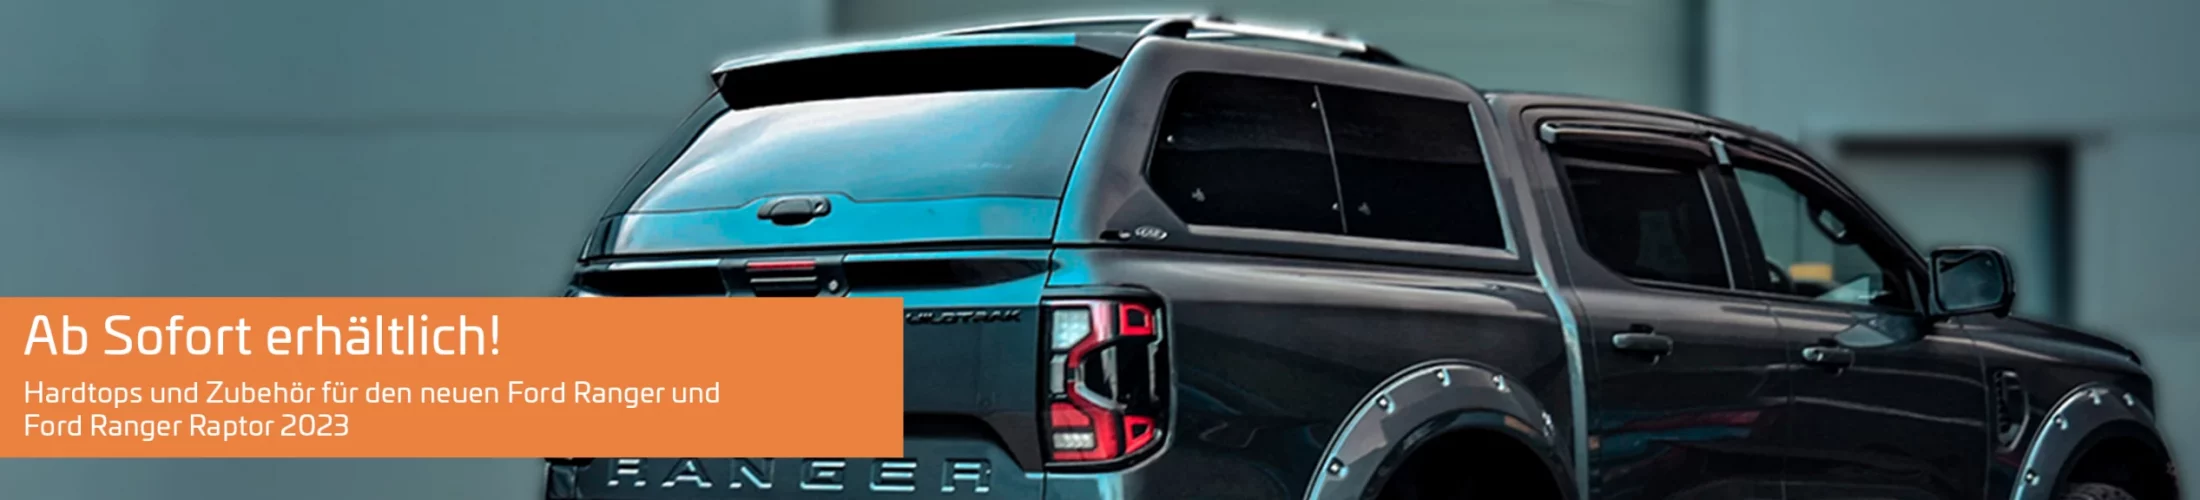 Ab Sofort verfügbar: Hardtops und Zubehör für den neuen Ford Ranger und Ford Ranger Raptor ab 2023